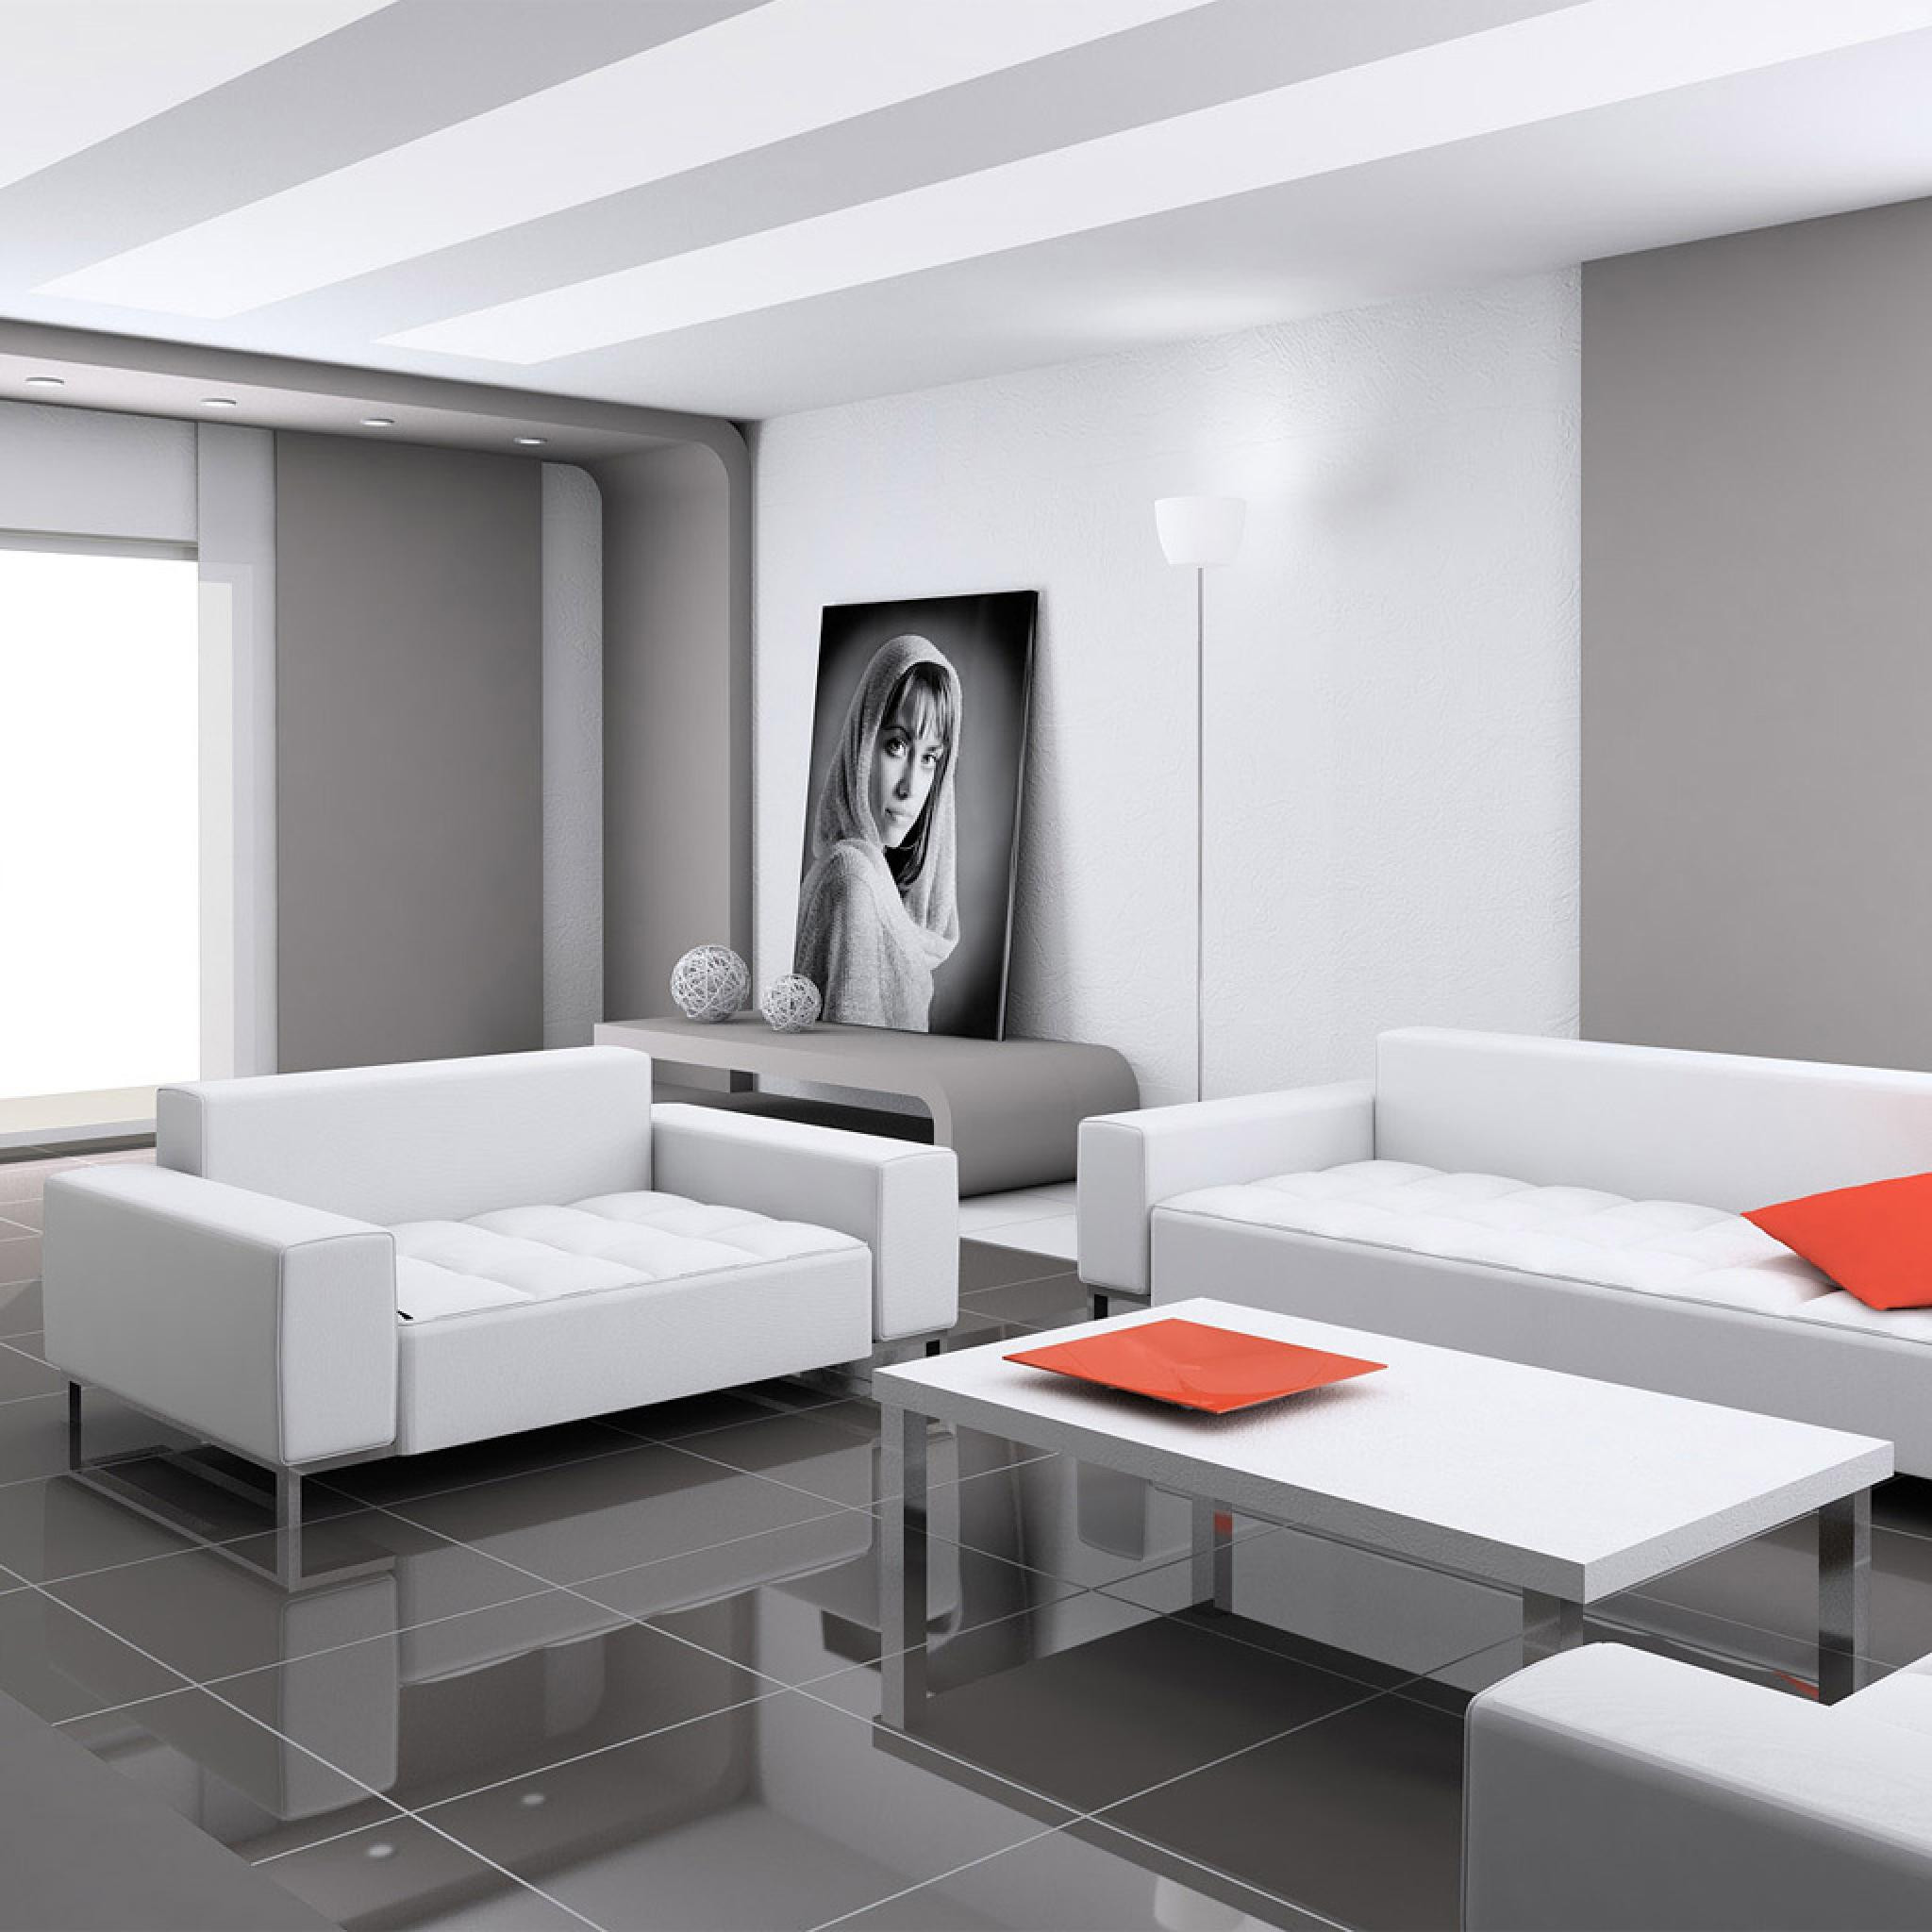 Minimalist Decor Living Room
 Miscellaneous Minimalist Living Room Design Ideas iPad